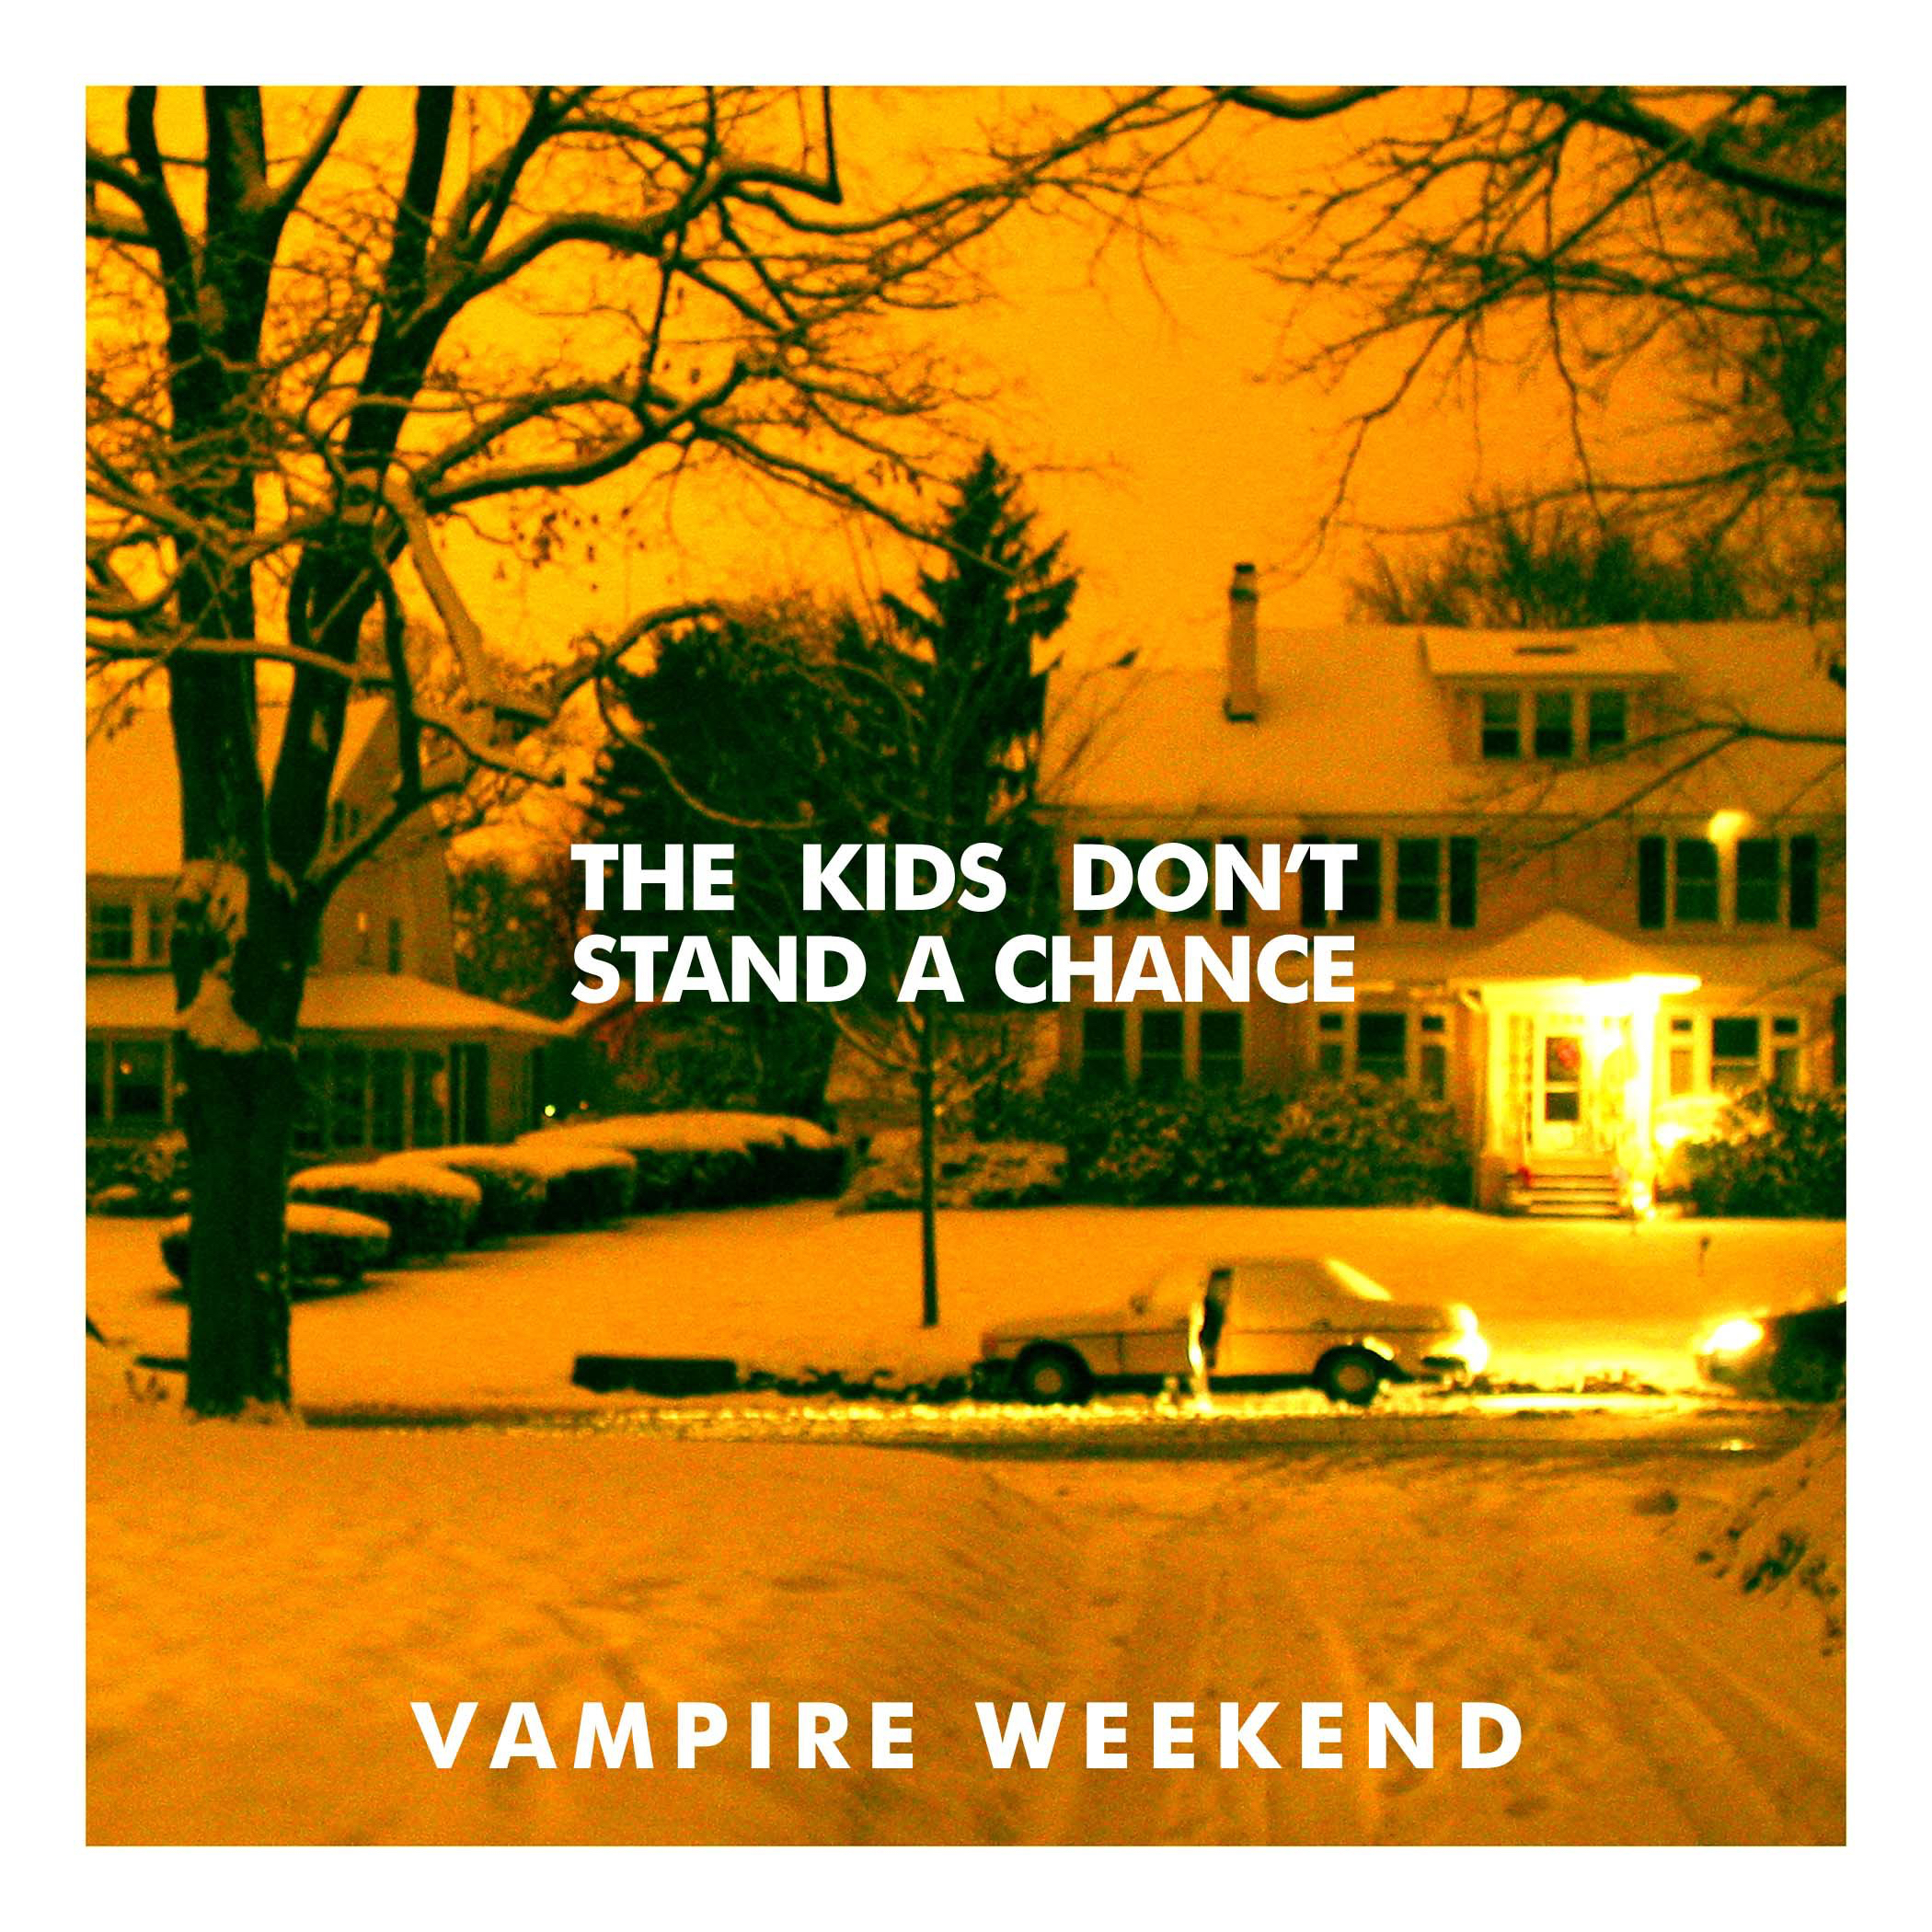 vampire weekend cover art